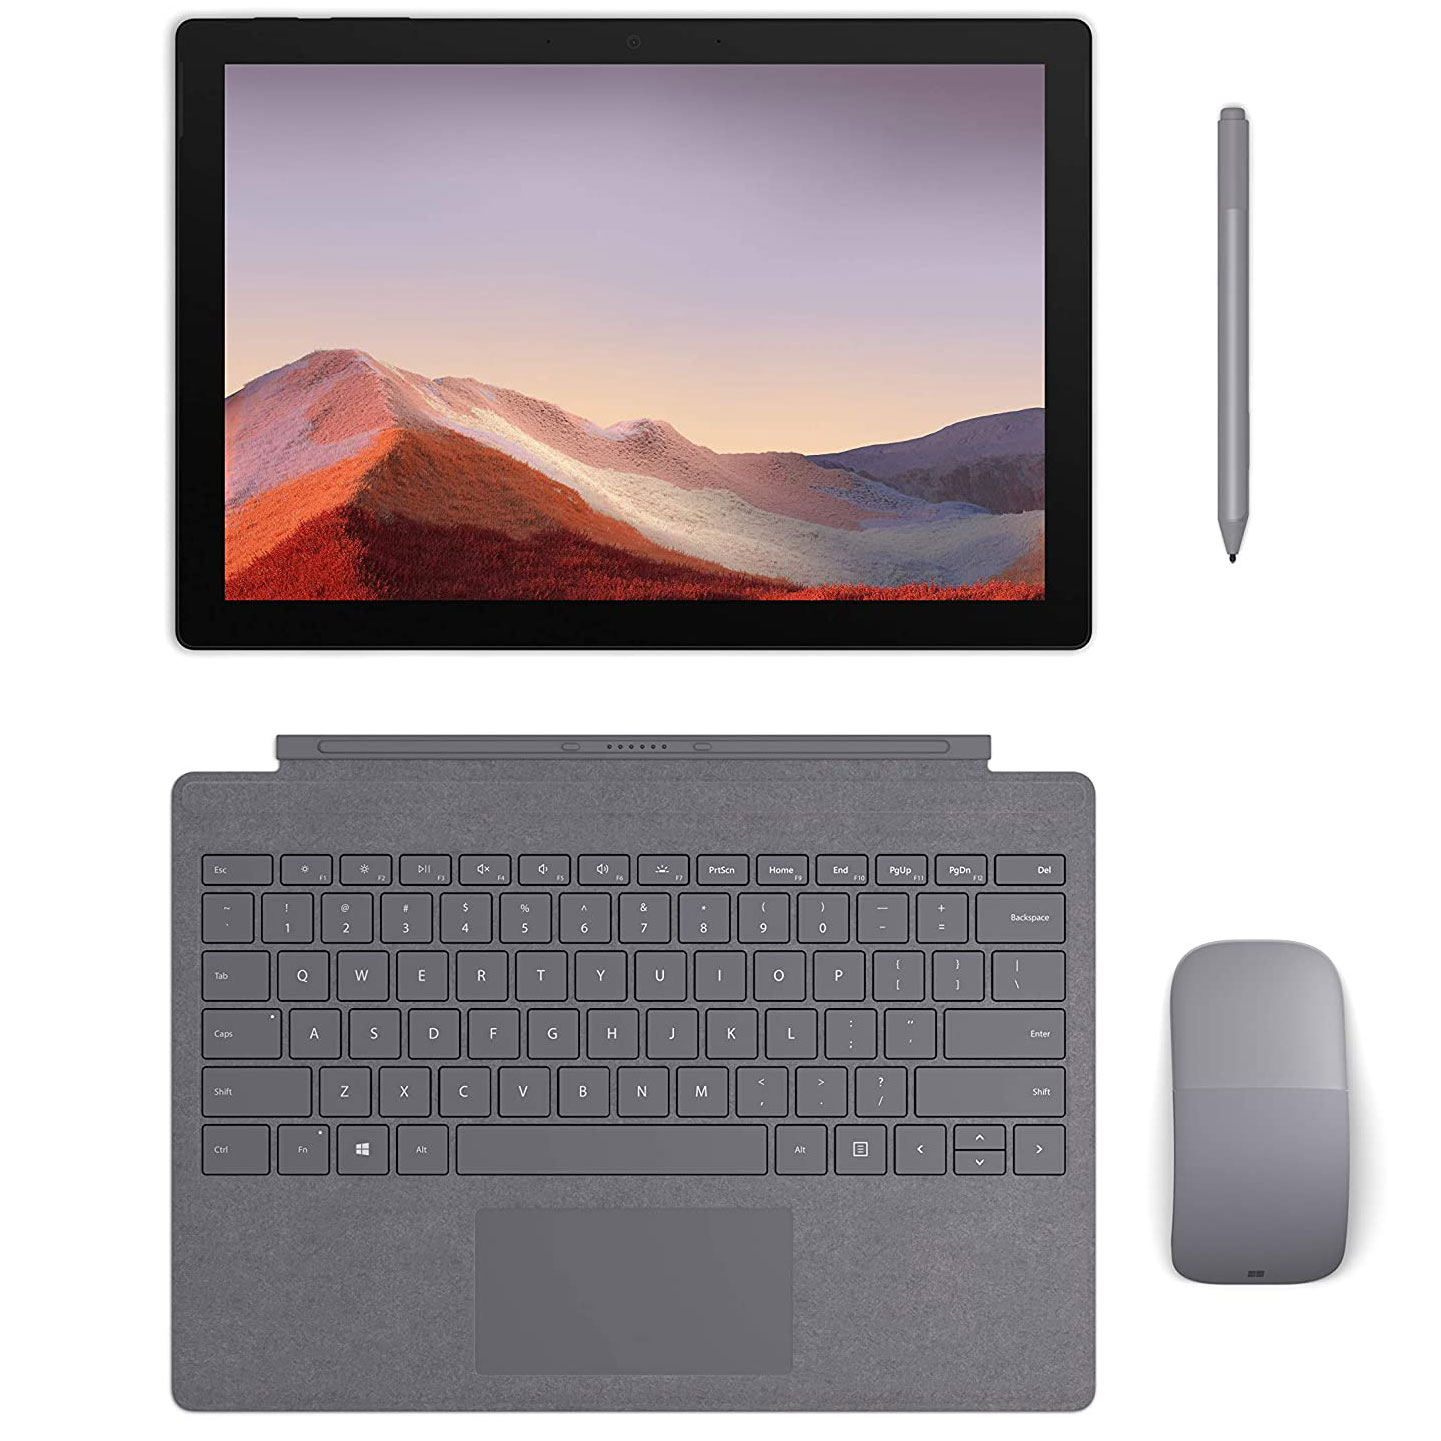 Microsoft Surface Pro 7 Core i5, Ram 8GB, SSD 128GB Like New